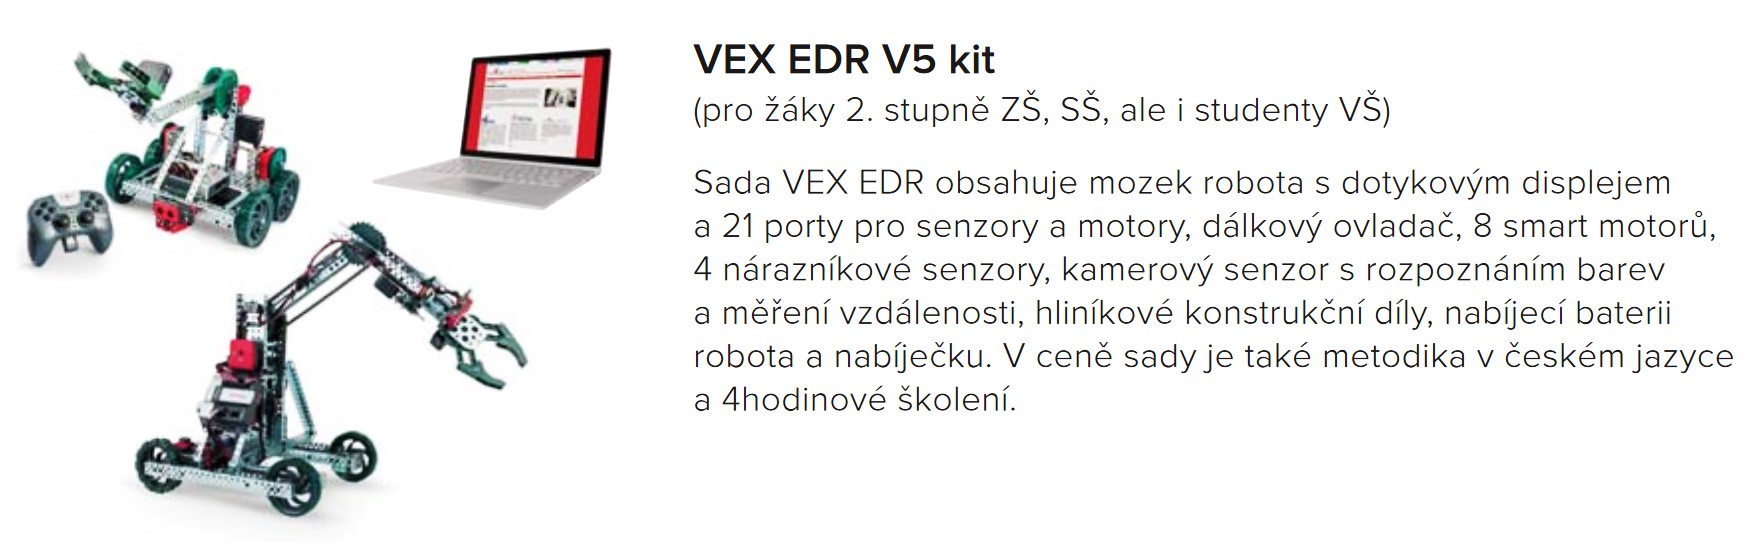 VEX2.jpg